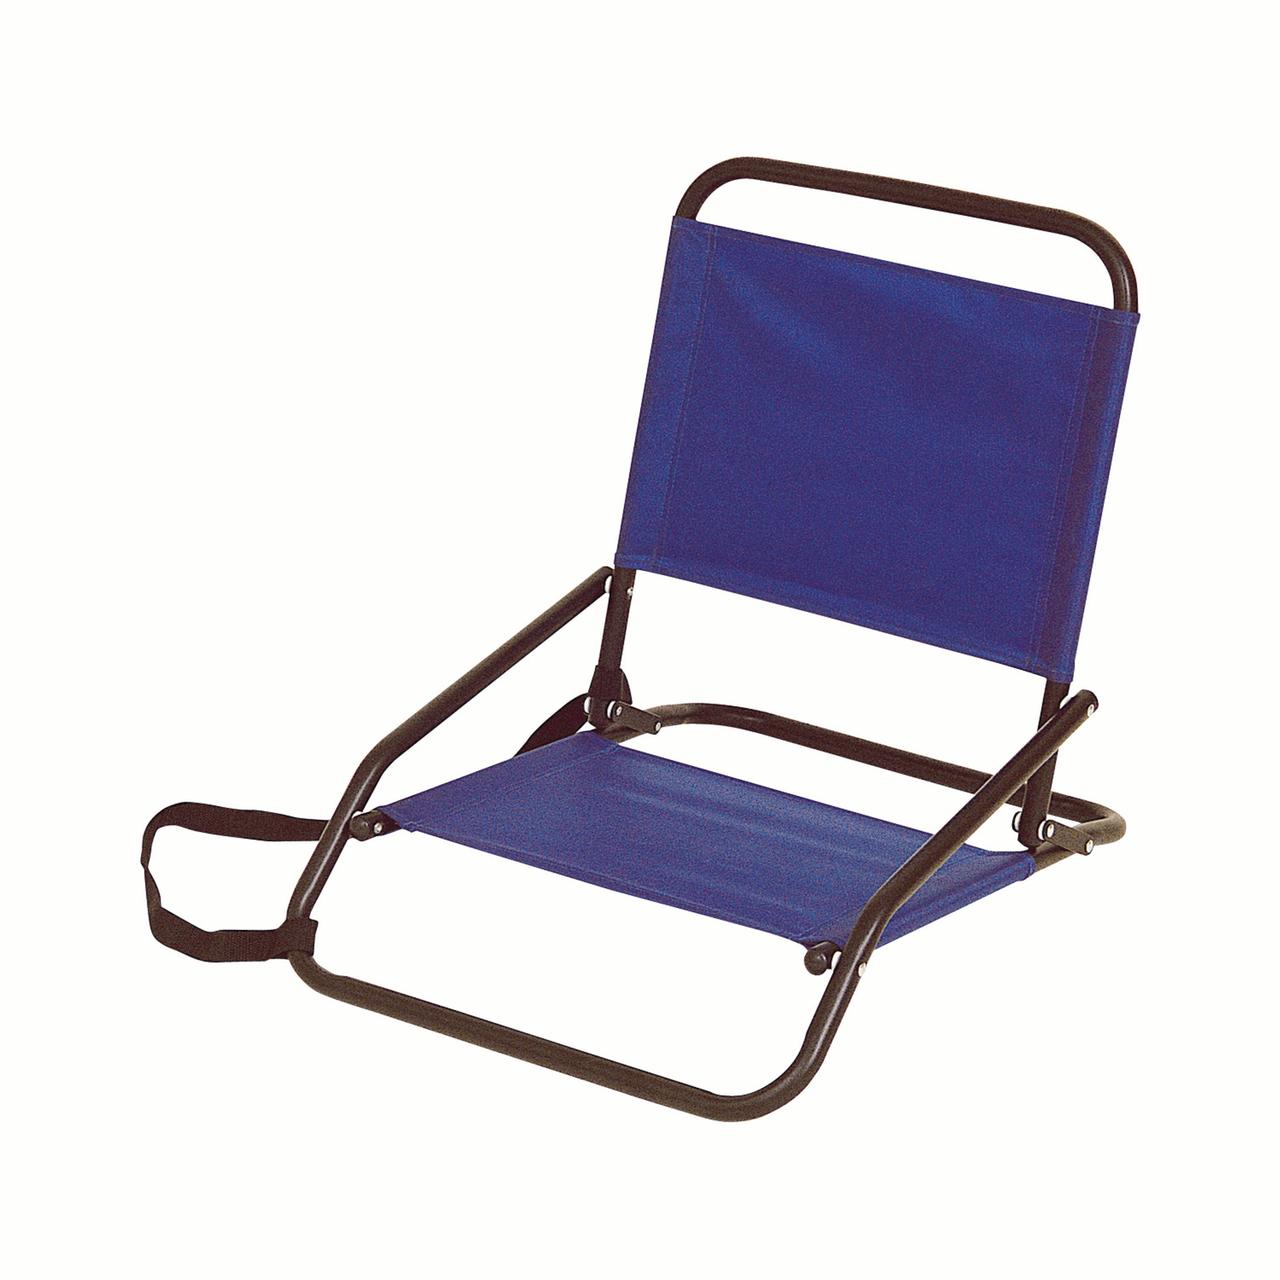 sand chair